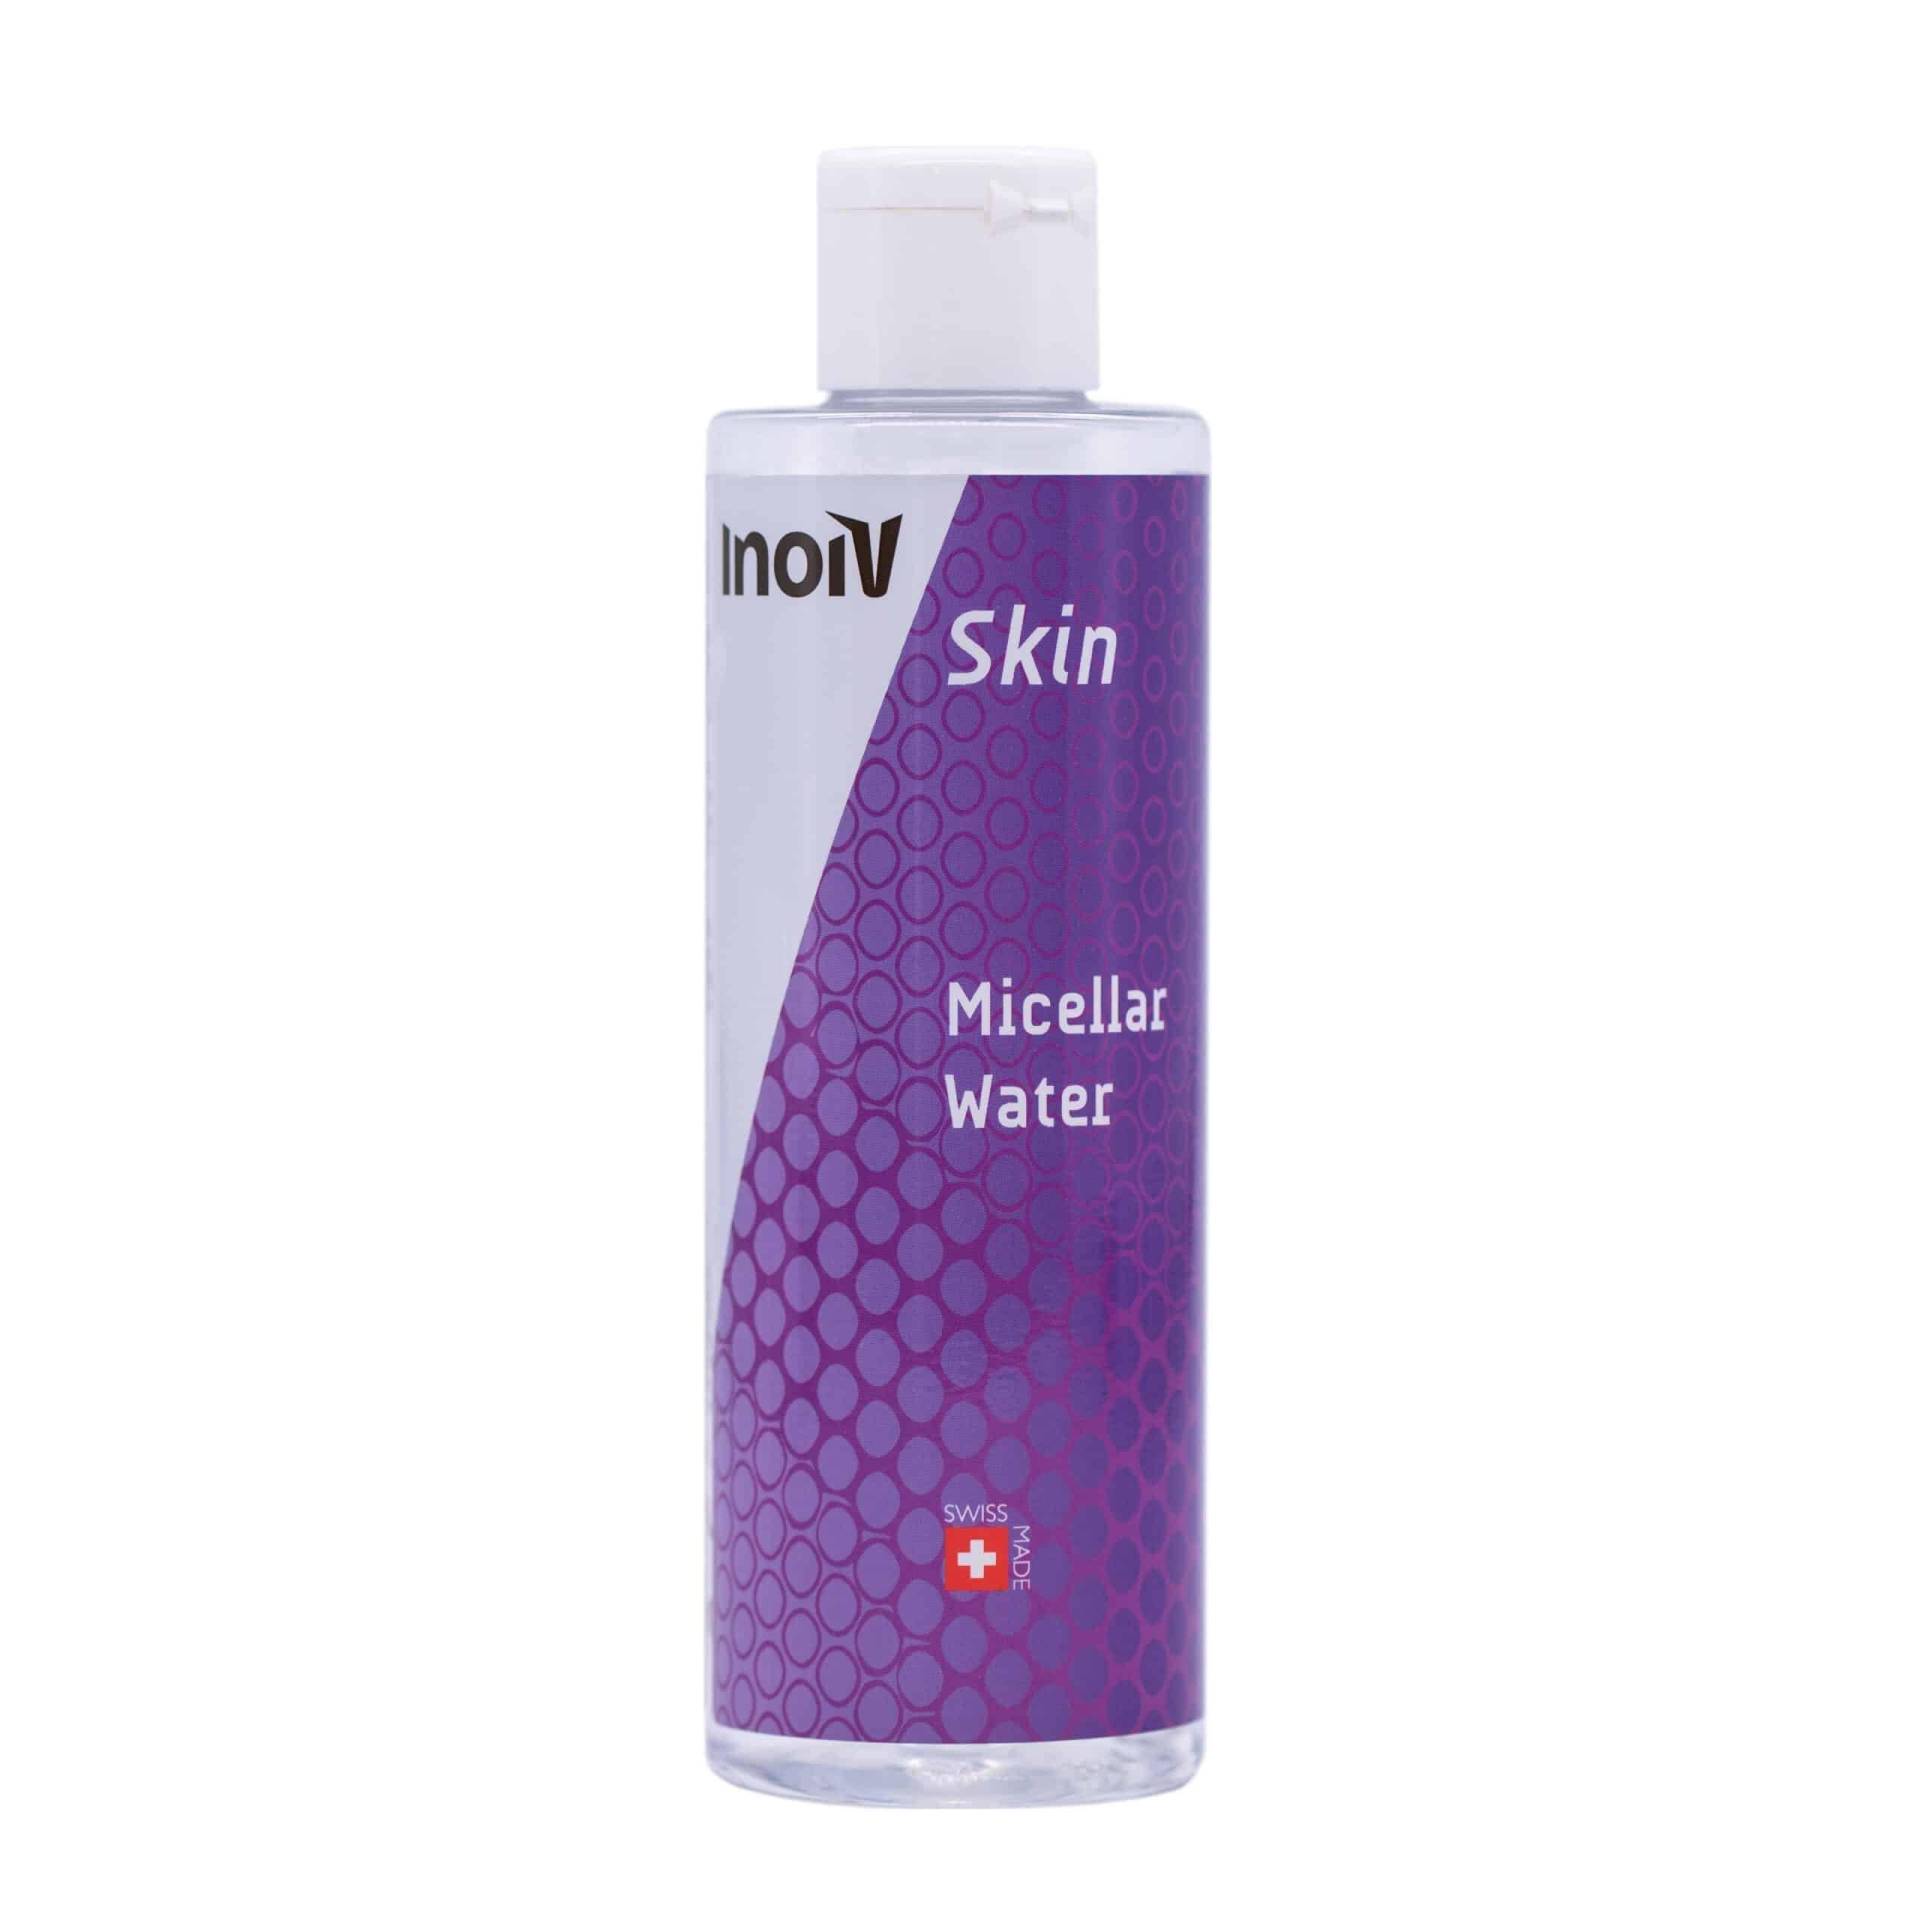 Micellar Water Damen  200ml von Inoiv Skin